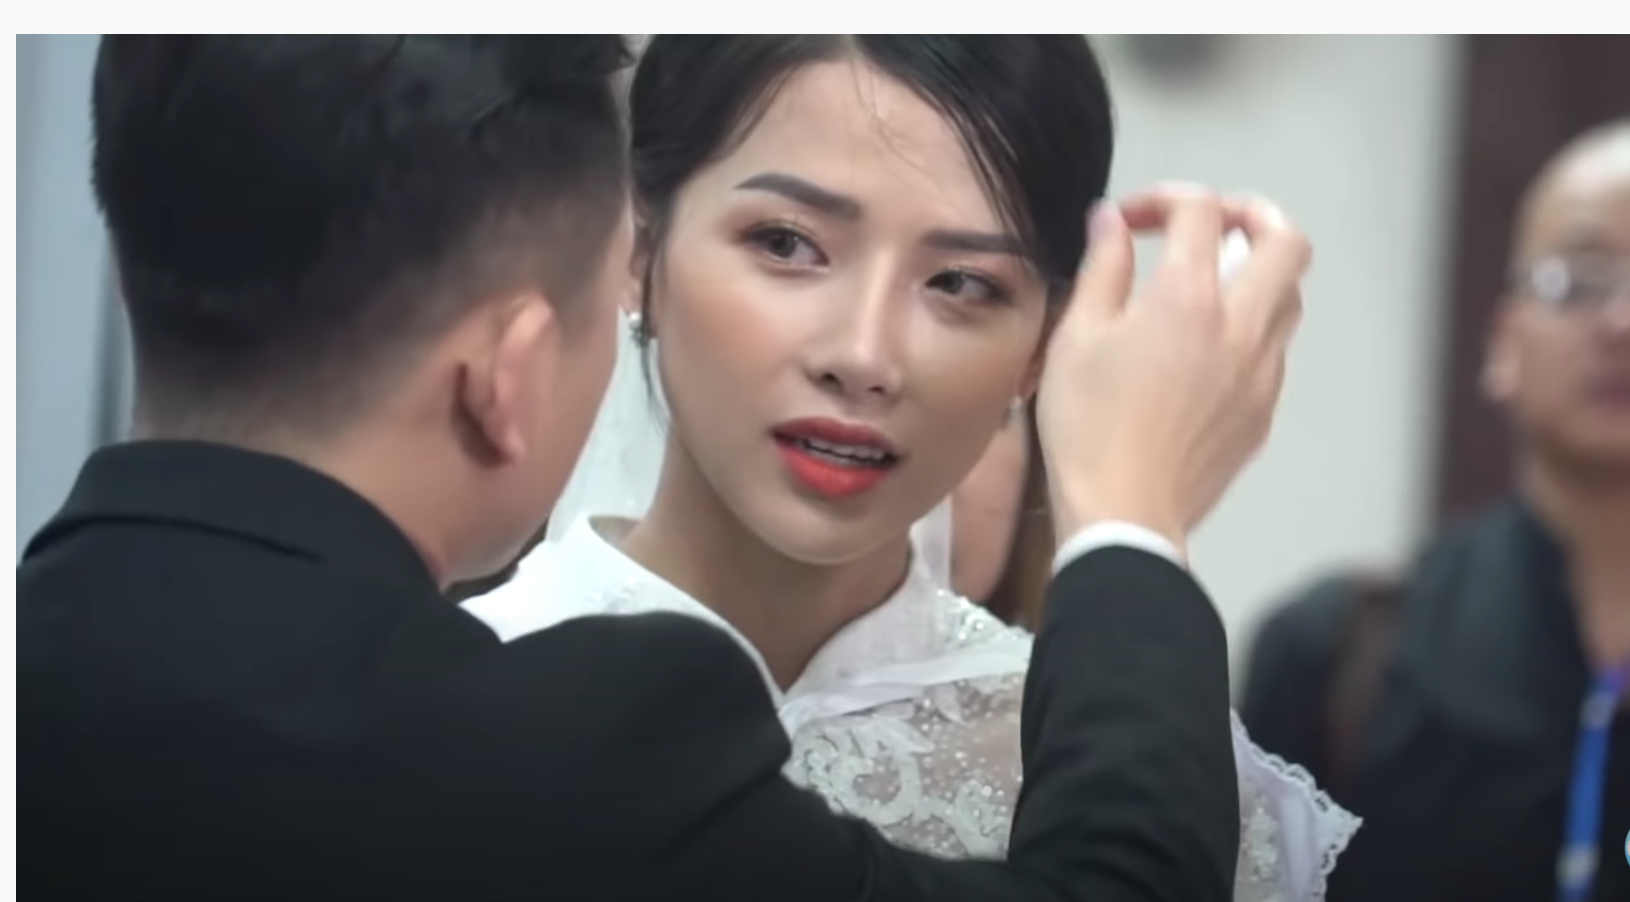 Phan Mạnh Quỳnh cưới hotgirl: Cô dâu diễm lệ, chú rể hát Vợ người ta  - 6